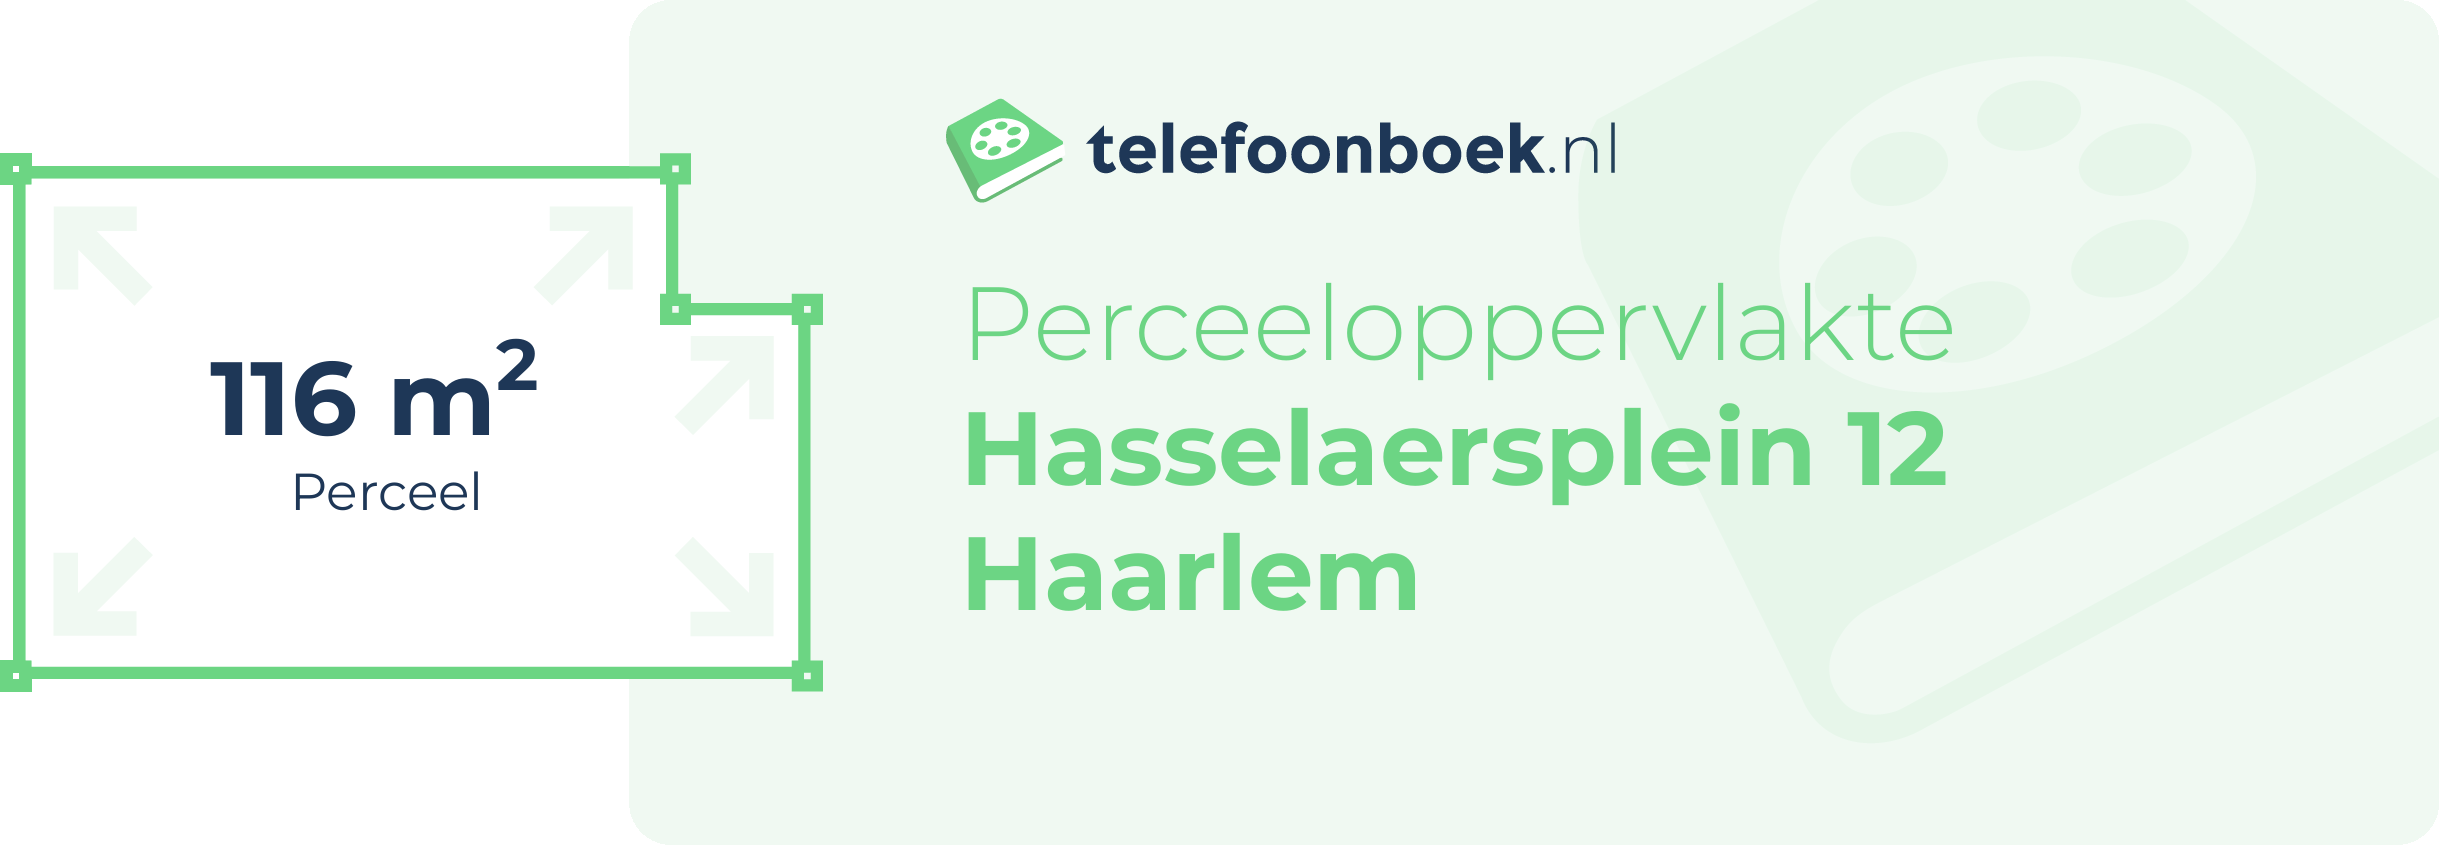 Perceeloppervlakte Hasselaersplein 12 Haarlem